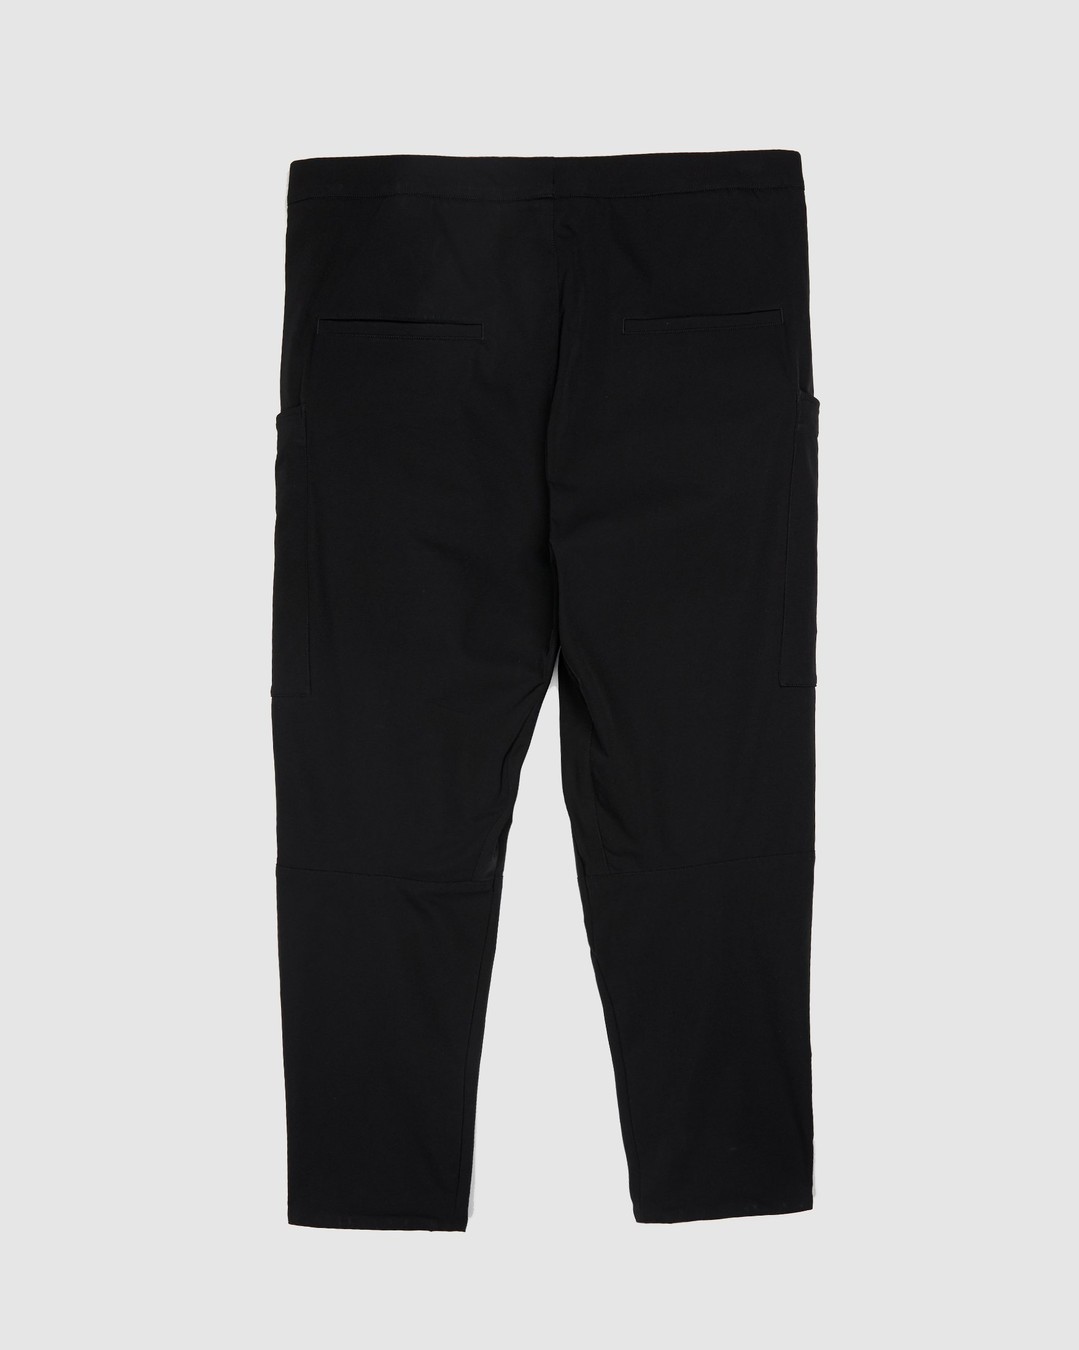 ACRONYM – P31A DS Trouser Black - Active Pants - Black - Image 2